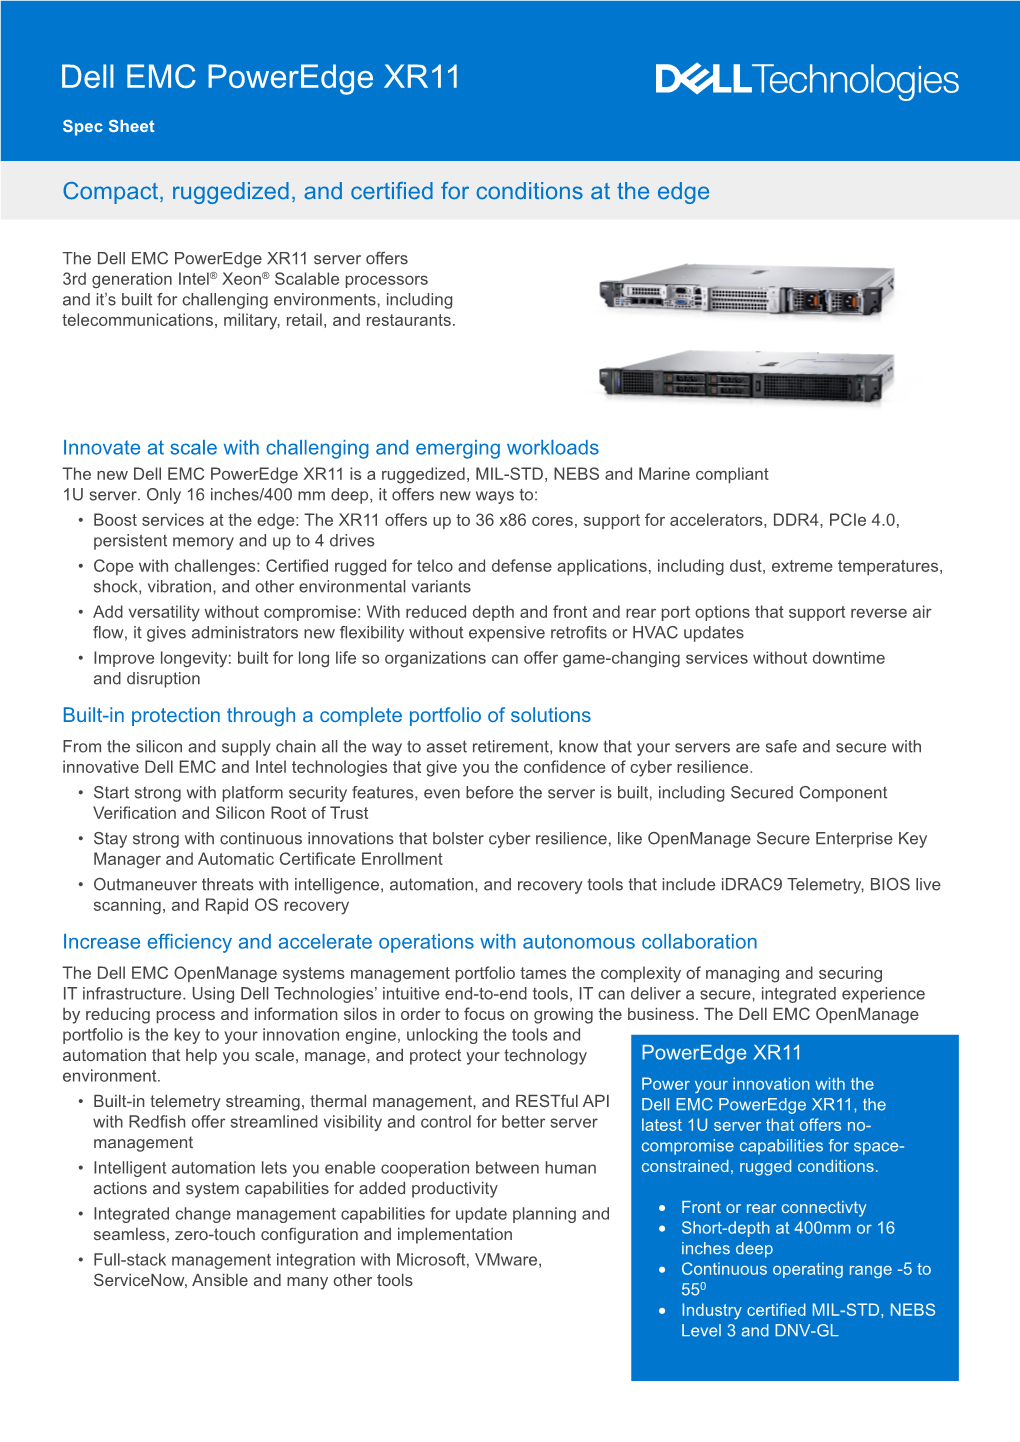 Dell EMC Poweredge XR11